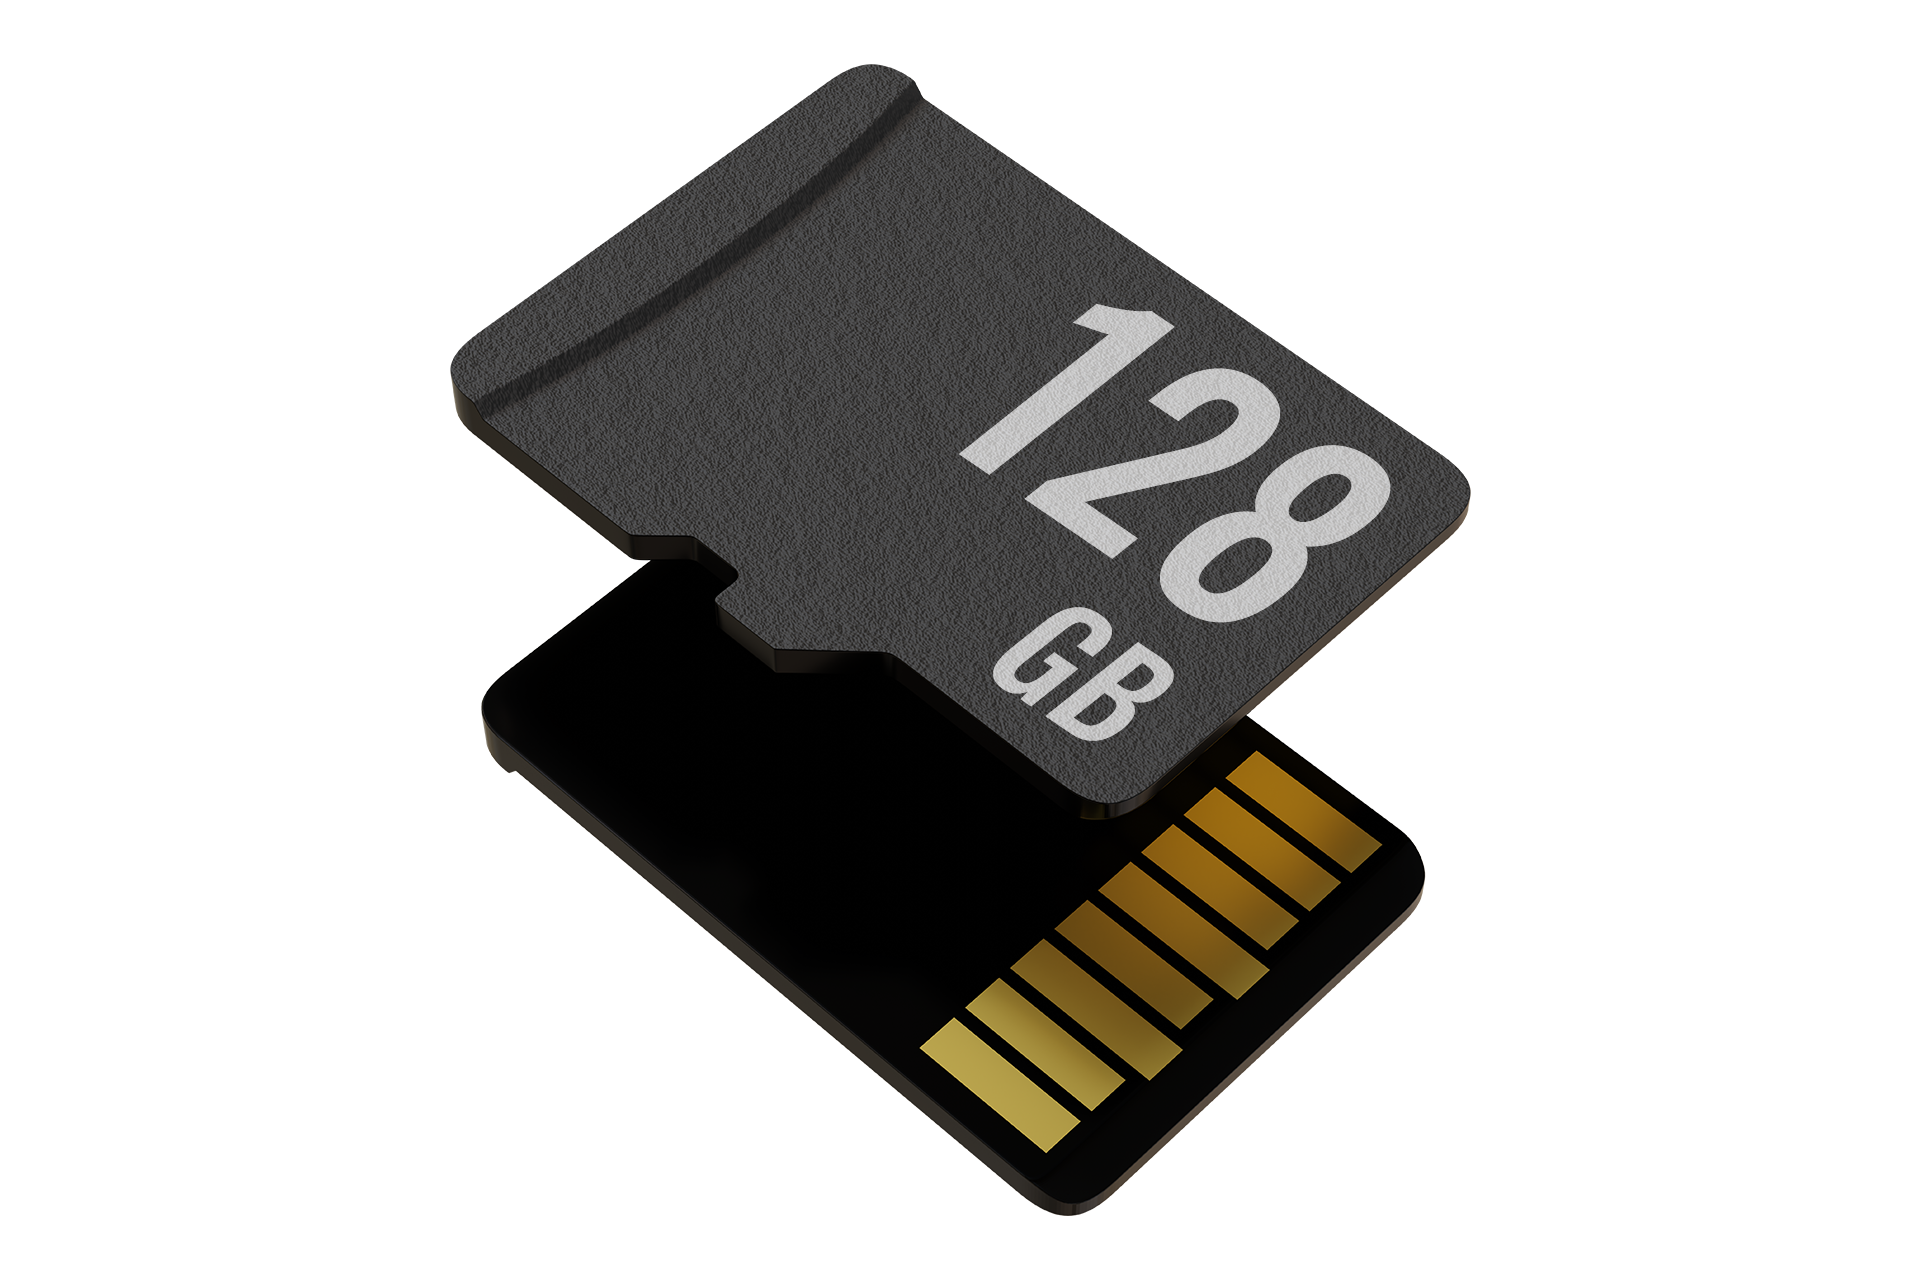 128 GB atmintis saugoti vaizdo įrašus neprisijungus prie tinklo